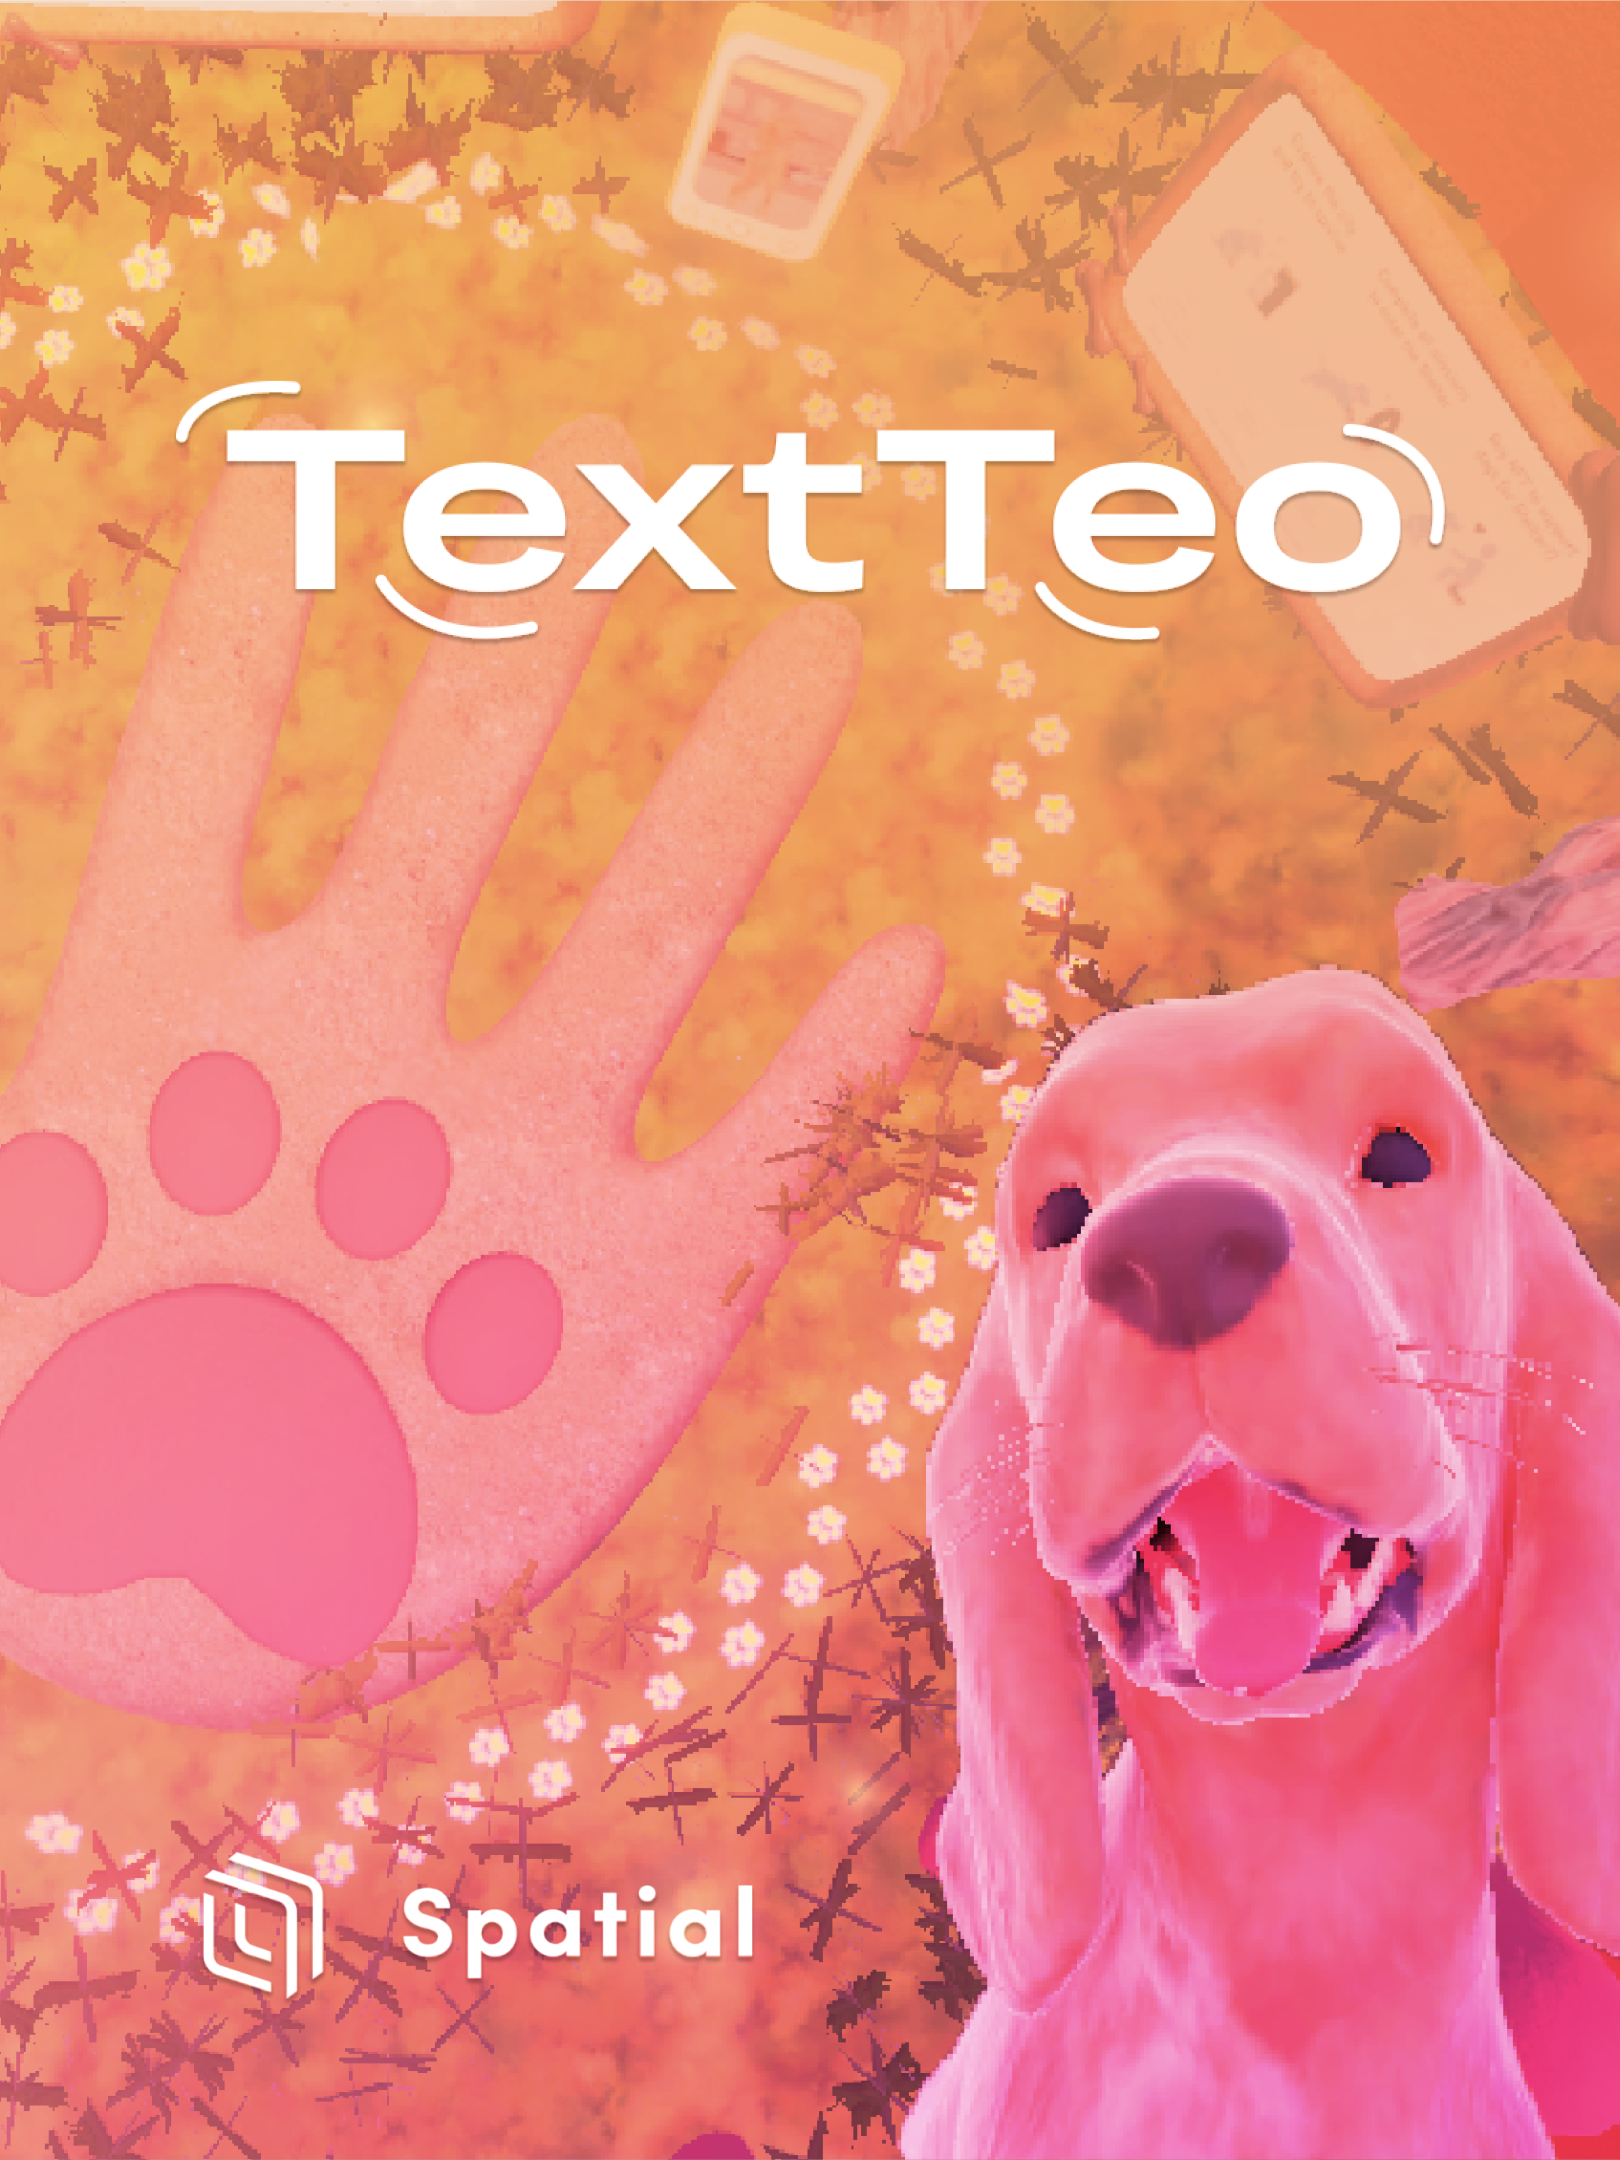 une affiche contenant le logo TextTeo à côté d'une photo d'un chien virtuel et du logo Spatial